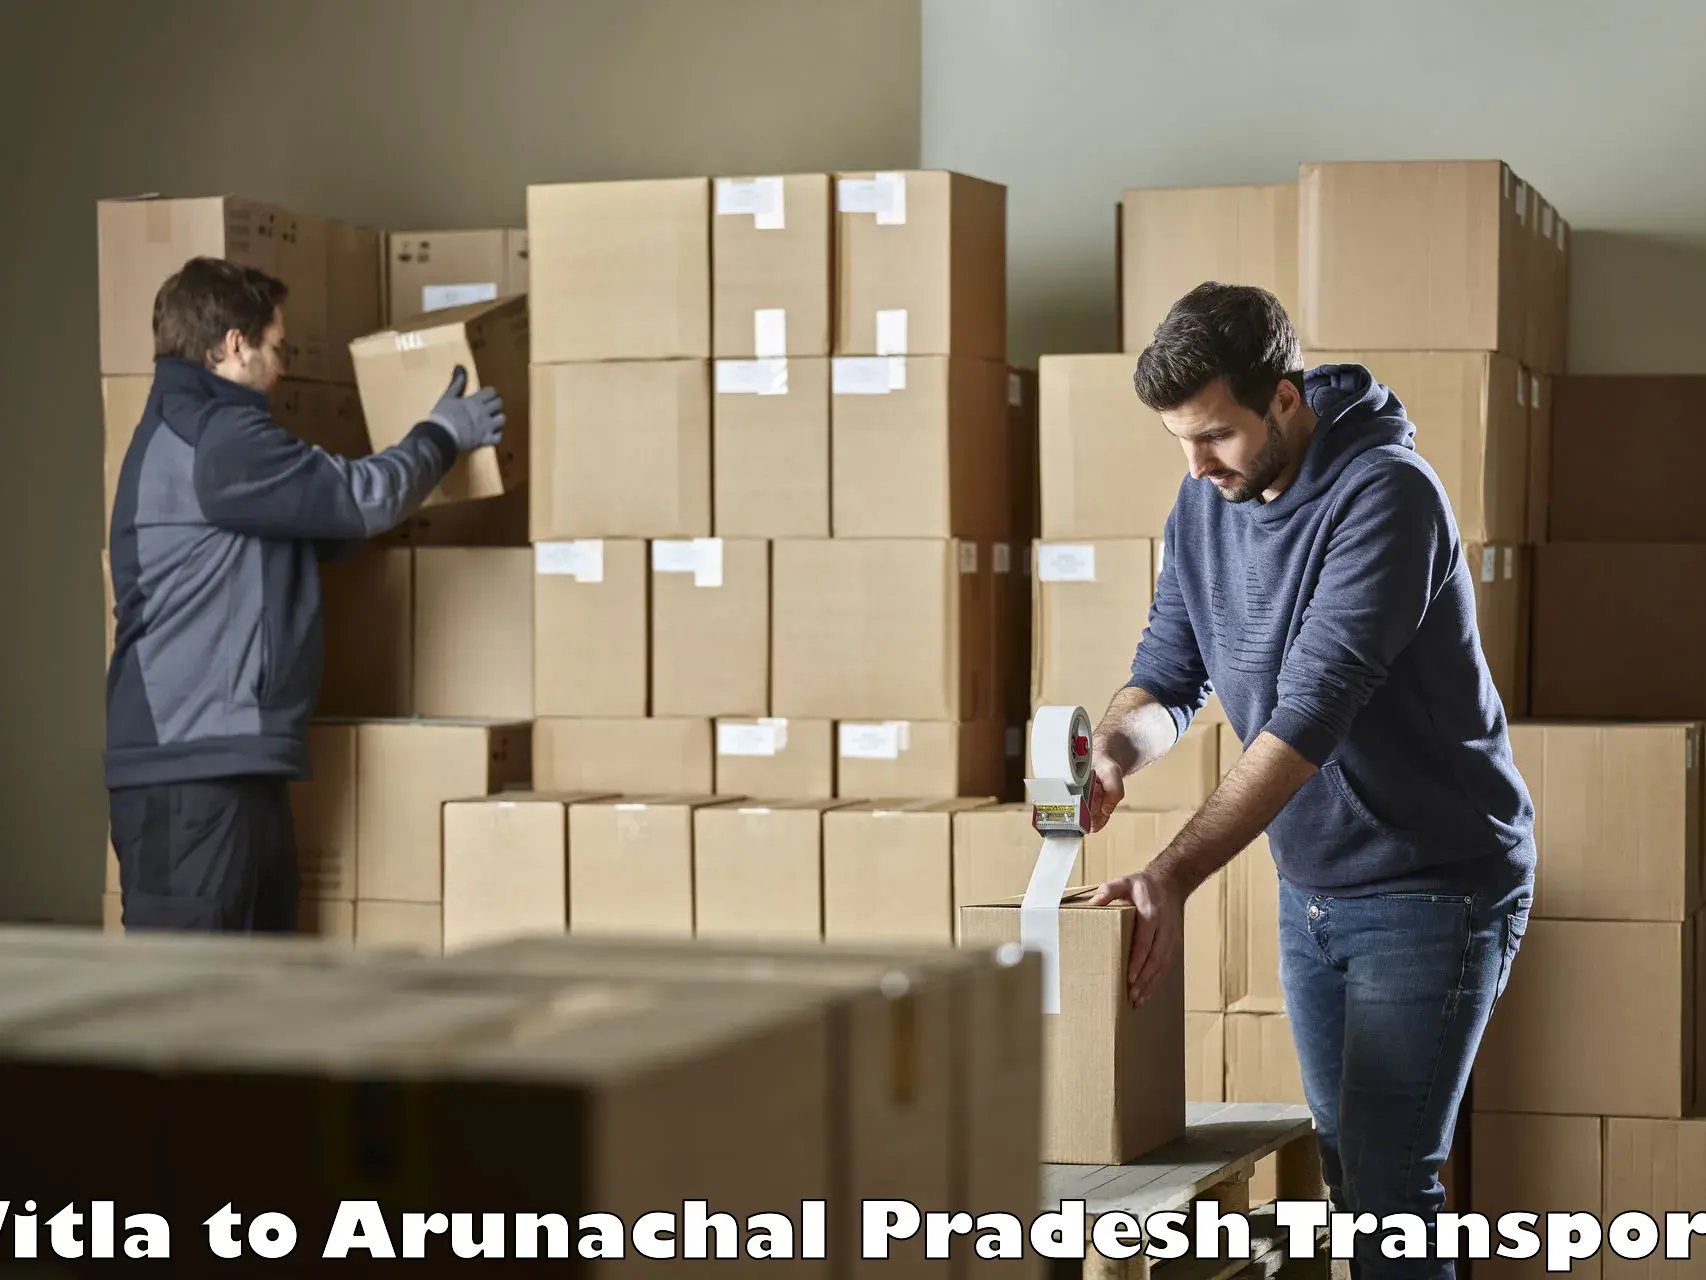 Air freight transport services Vitla to Arunachal Pradesh